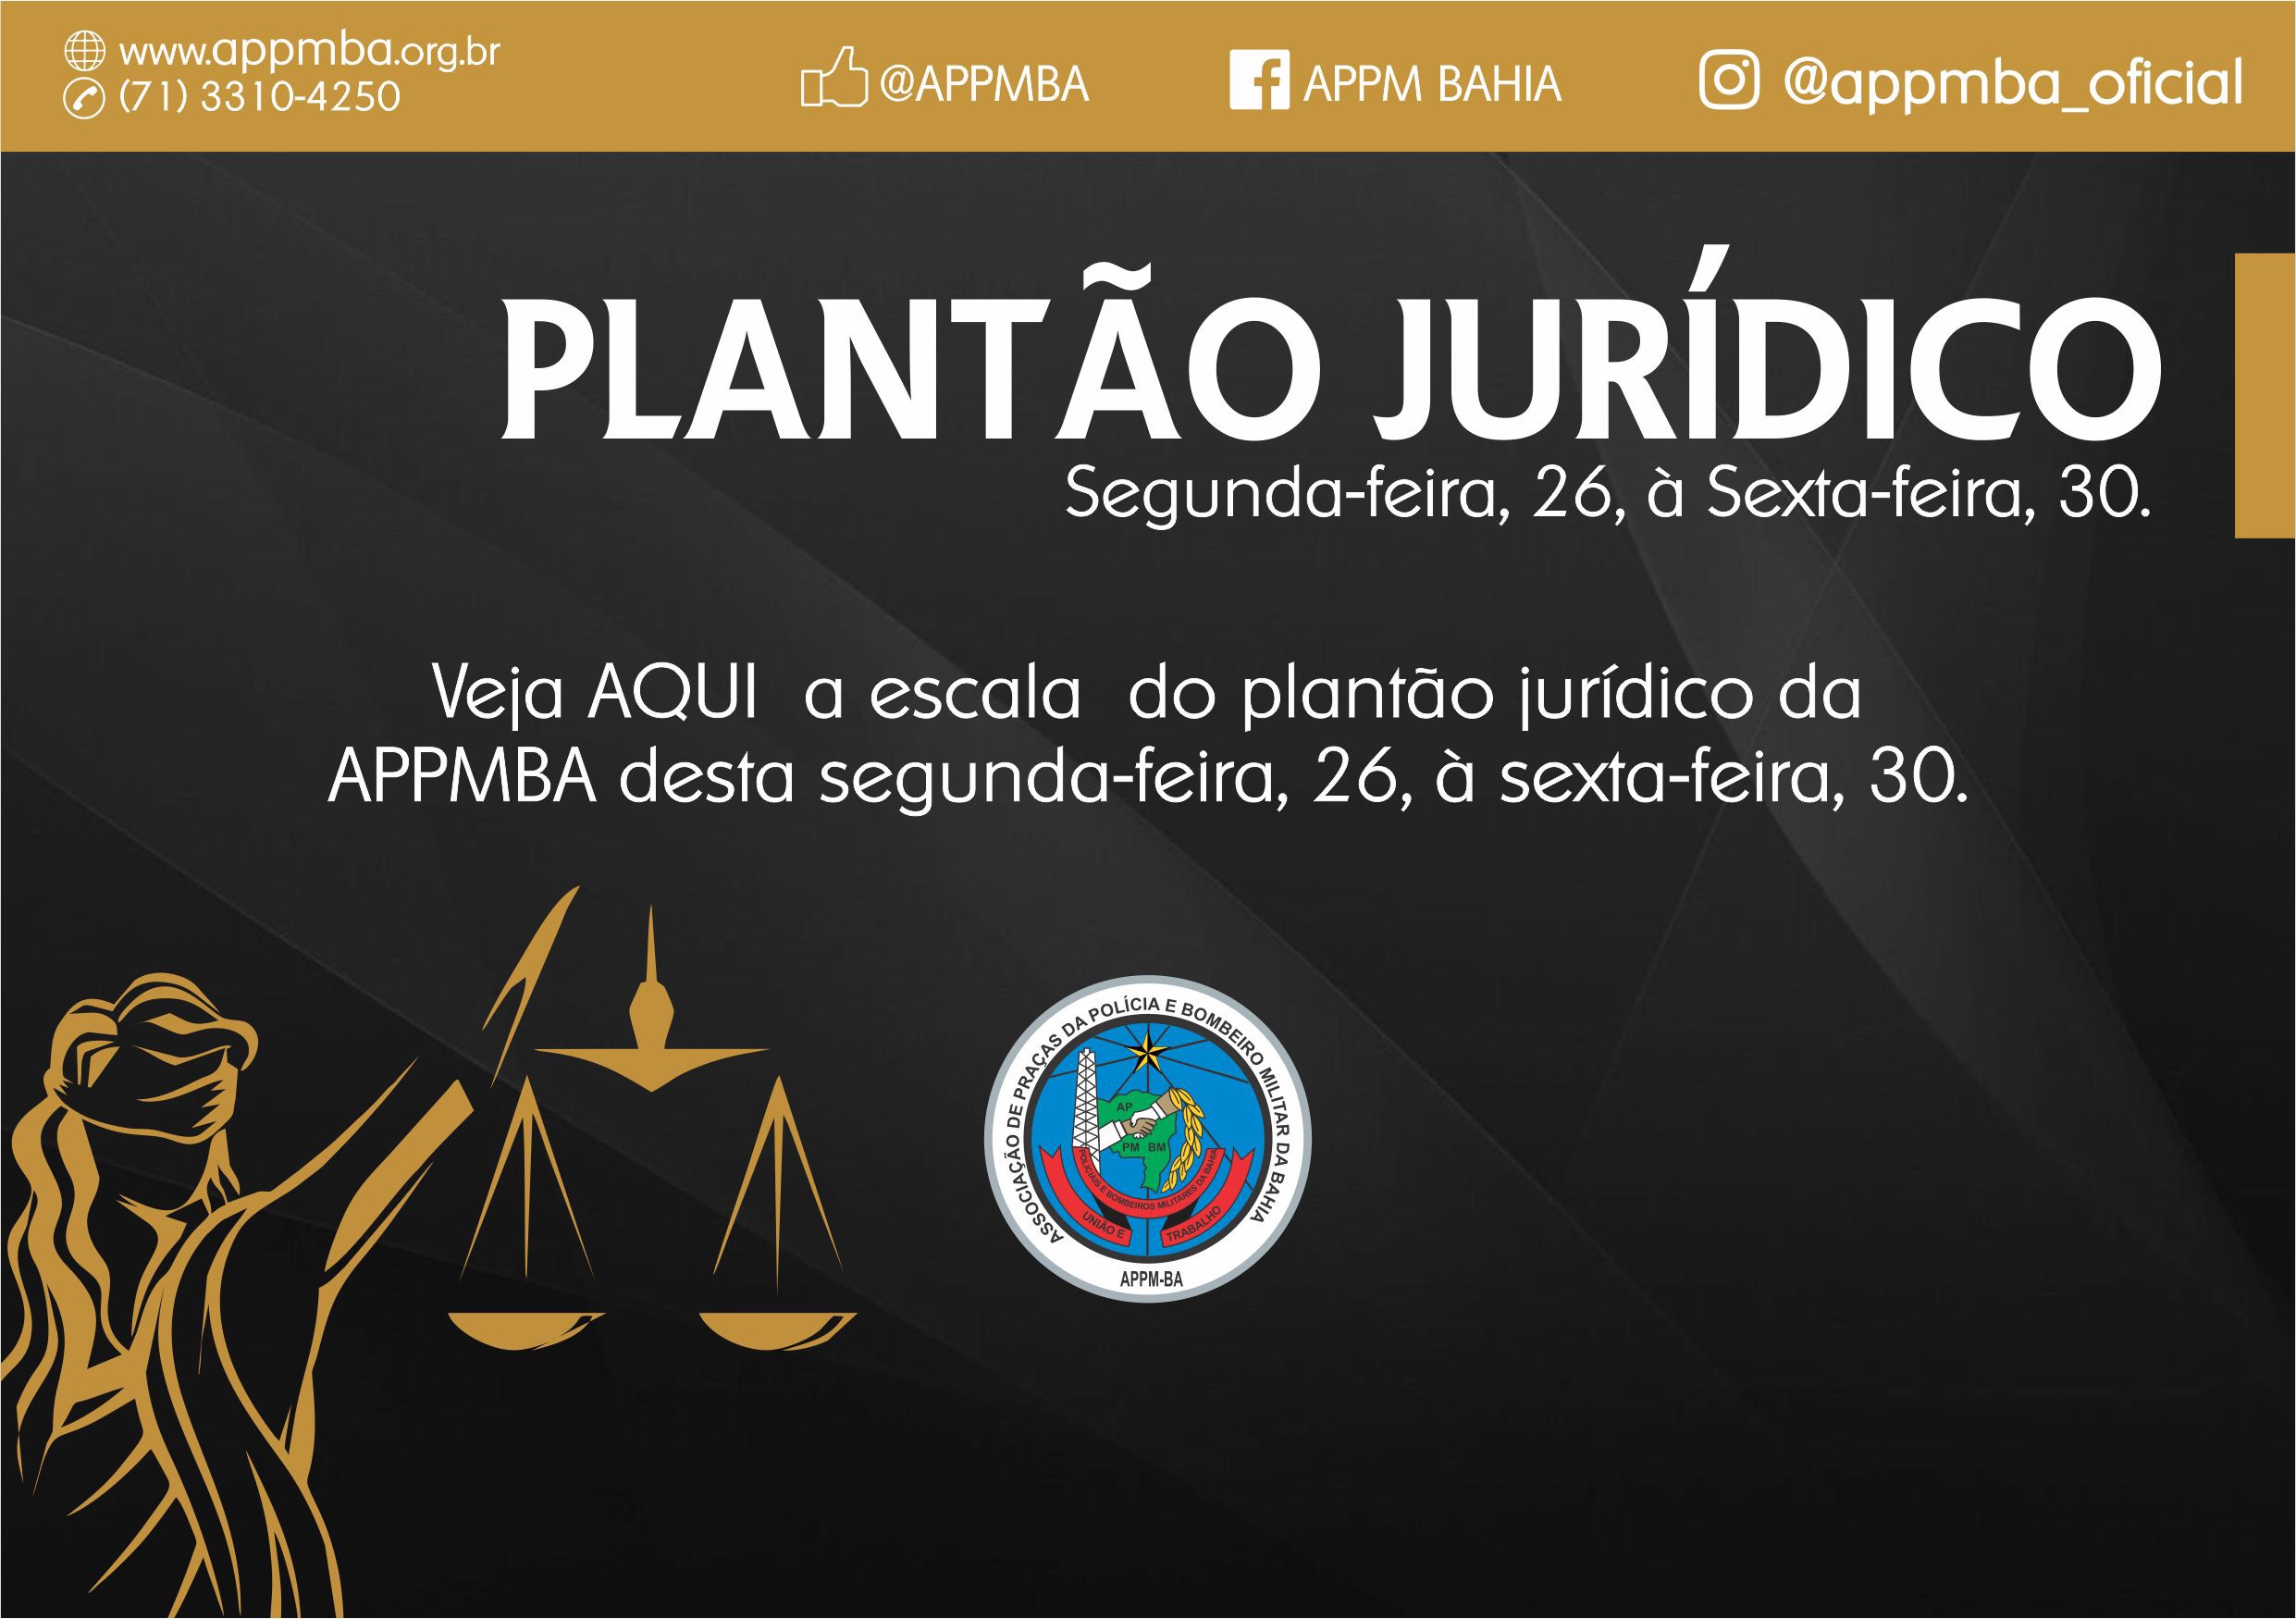 Plantão Jurídico APPM-BA, dias 26 à 30/11/2018